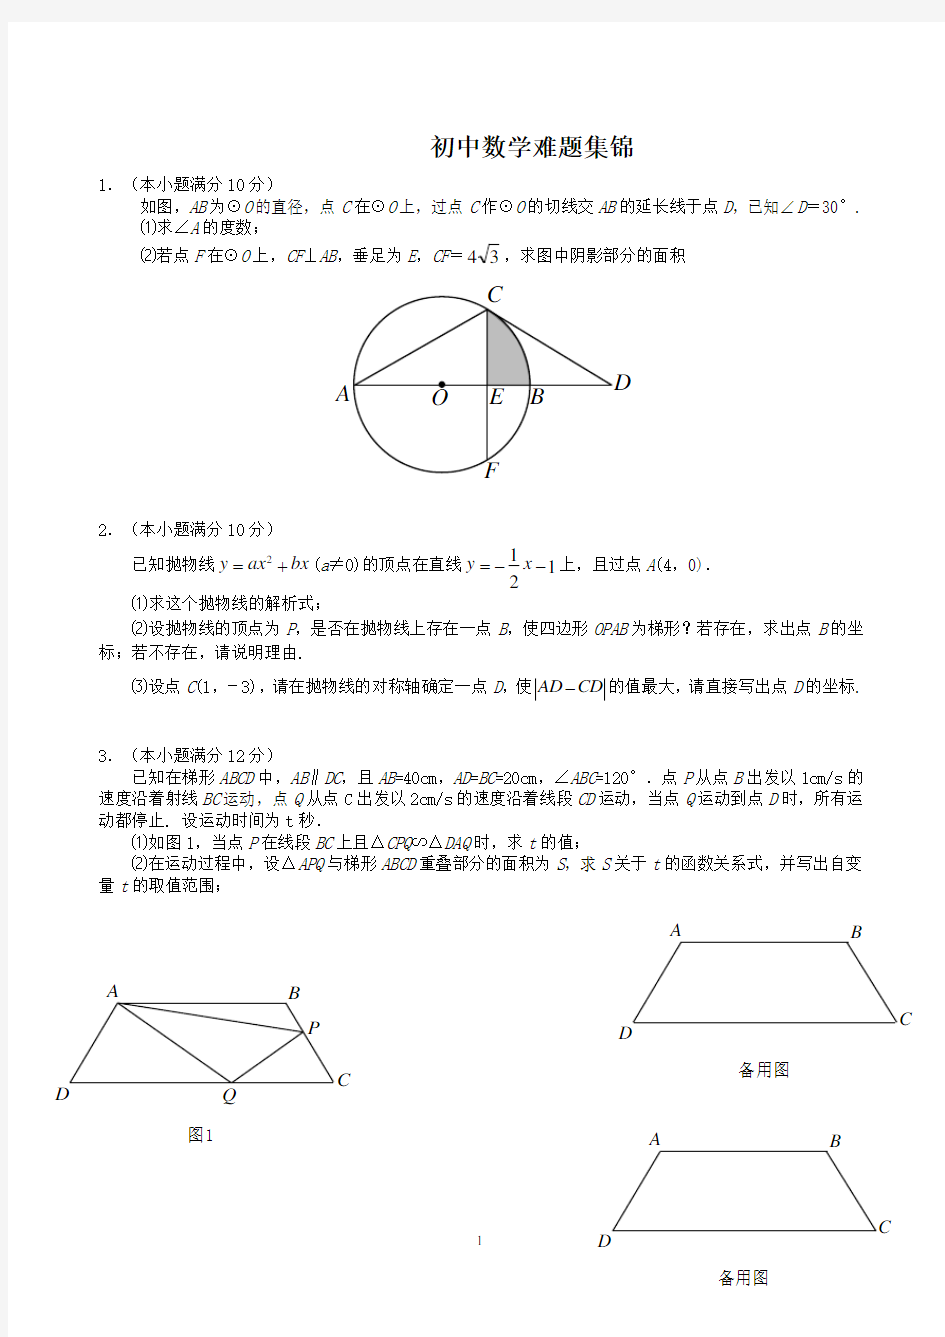 【中考必备】初三数学难题集锦